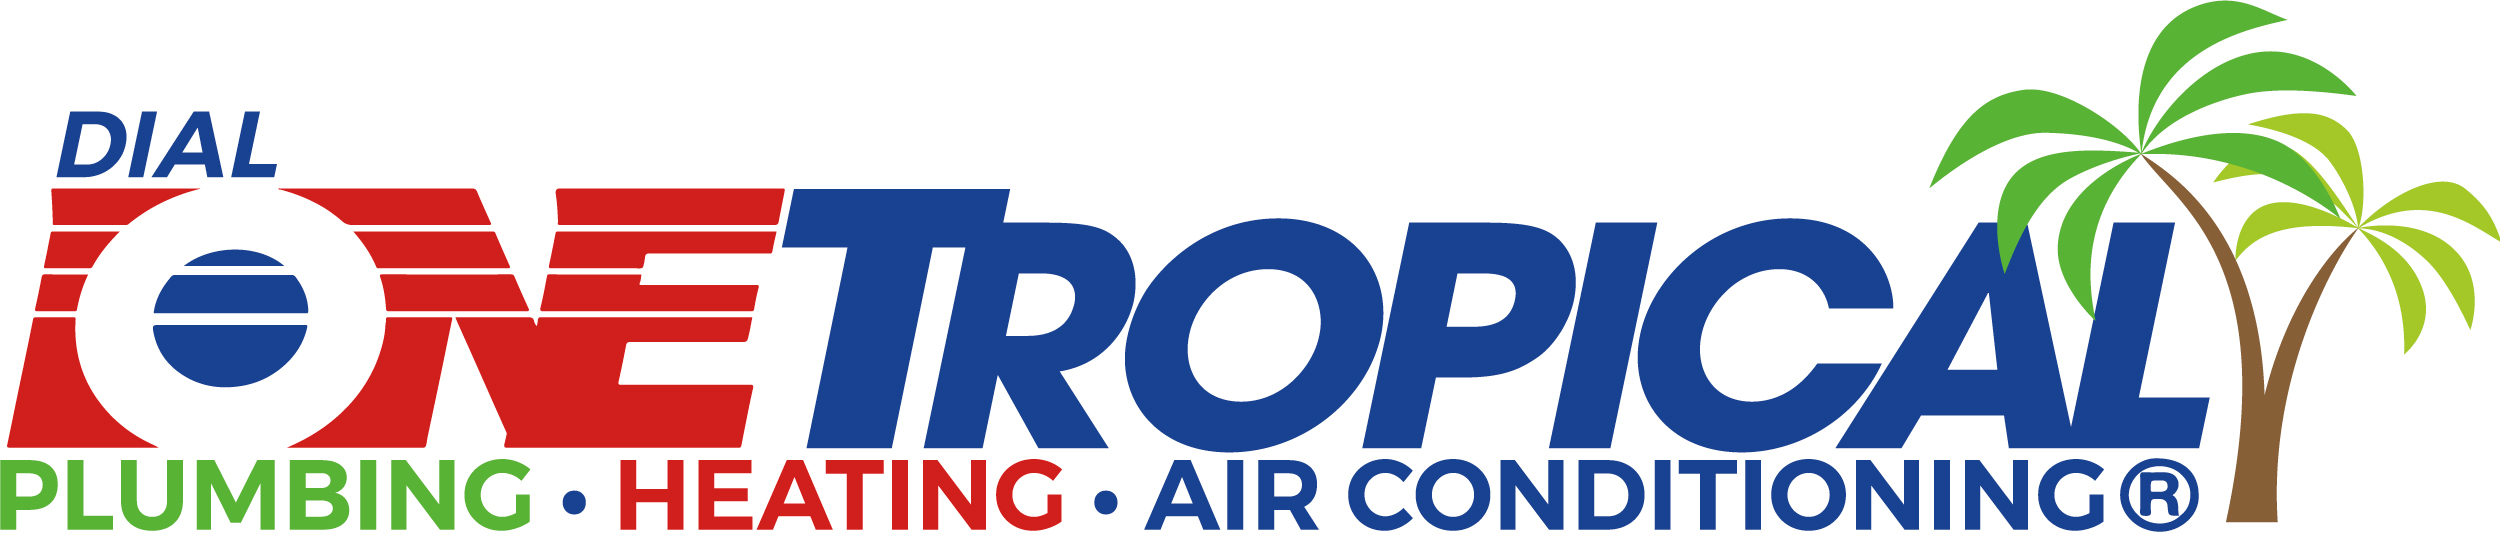 DialOneTropical_Logo